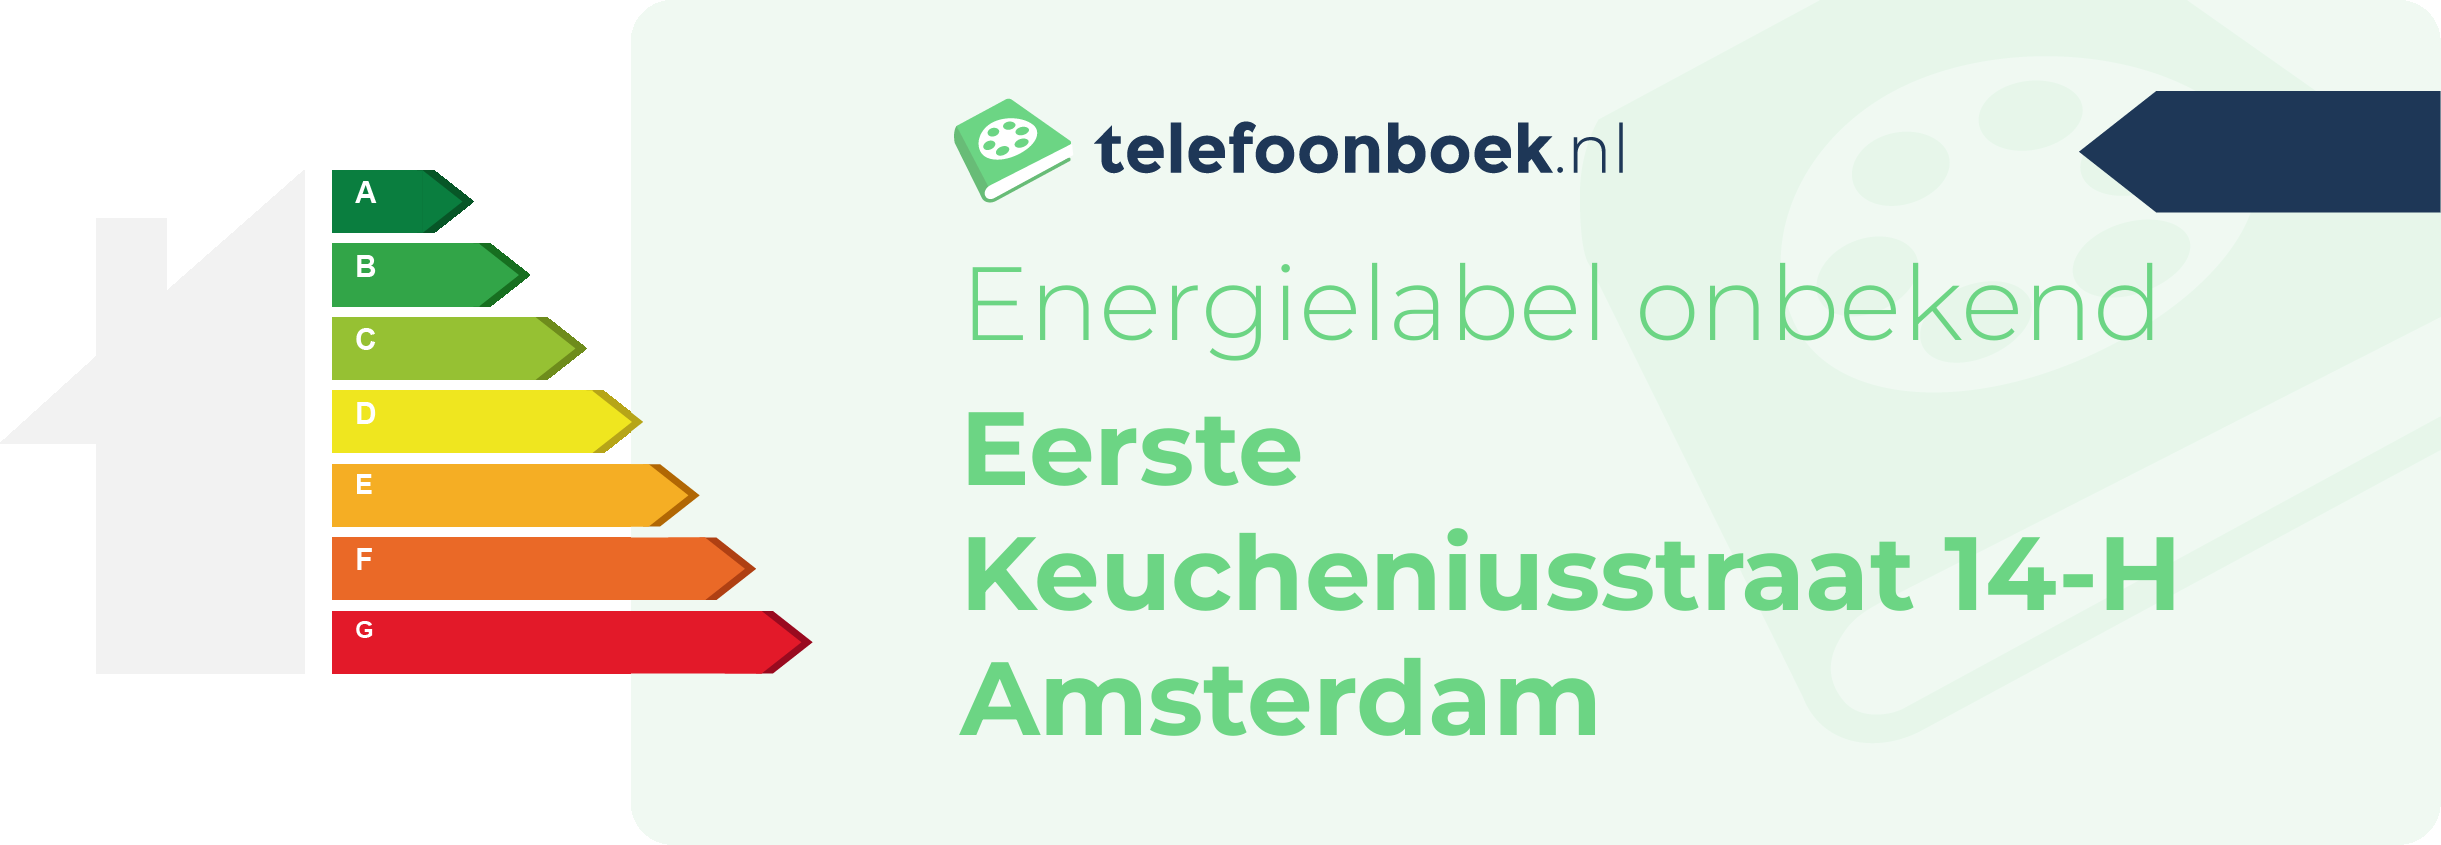 Energielabel Eerste Keucheniusstraat 14-H Amsterdam